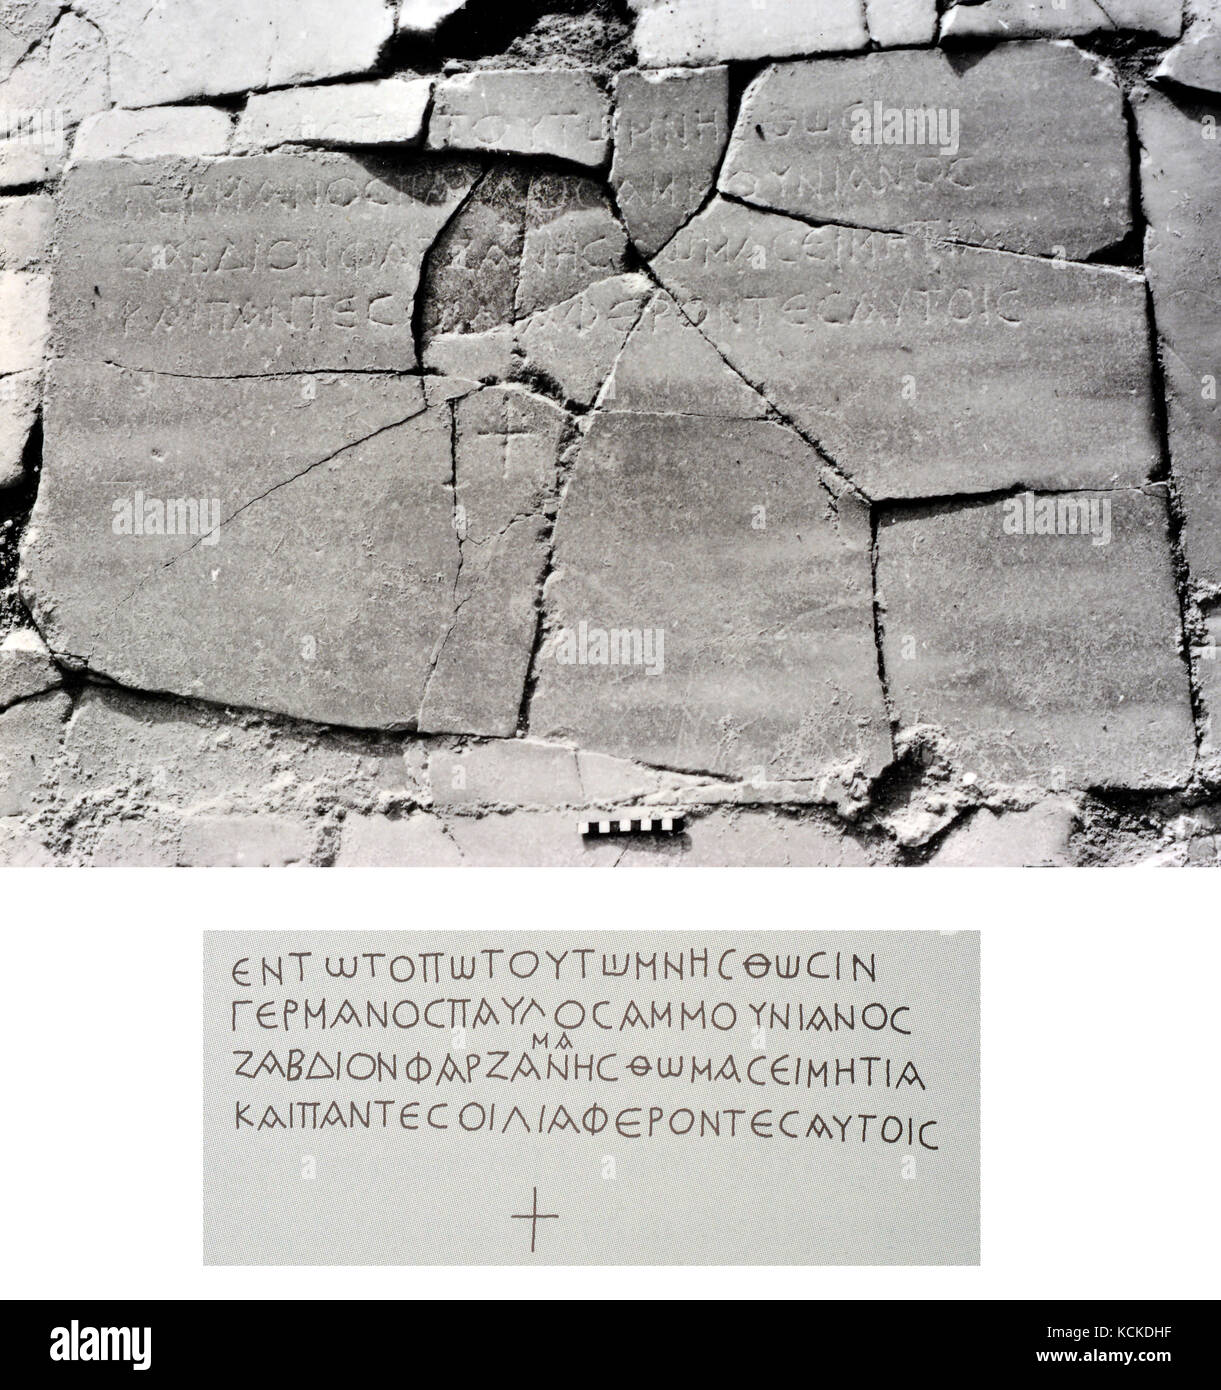 6155-1- Hamat Gader, iscrizione greca dal periodo romano i bagni nel sud del Golan vicino al mare di Galilea Foto Stock